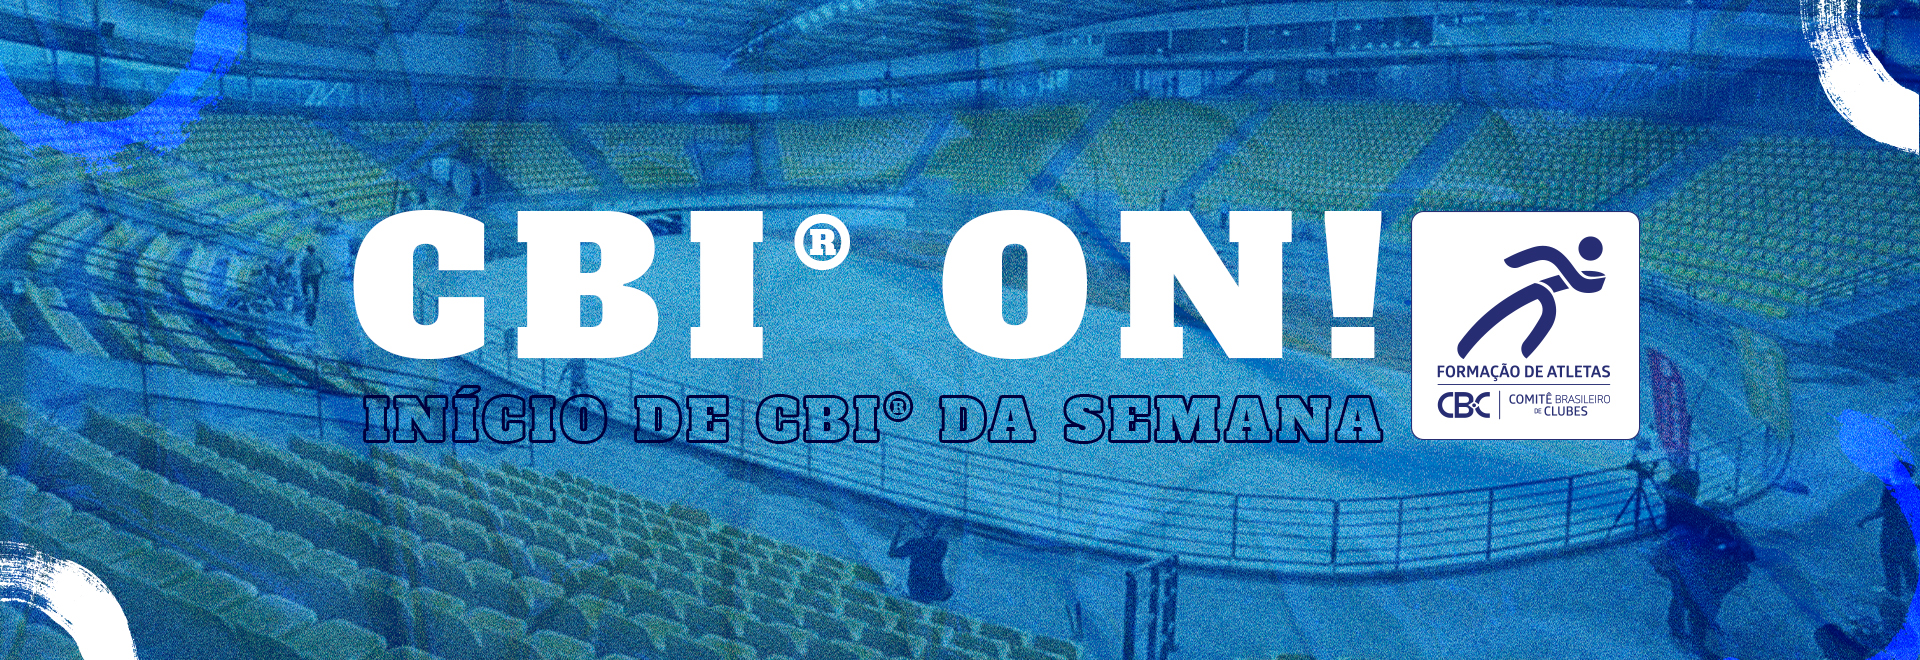 CBI® ON: Campeonato de Tiro com Arco, Ginástica, Handebol, Voleibol e Polo Aquático agitam a semana do esporte no Brasil